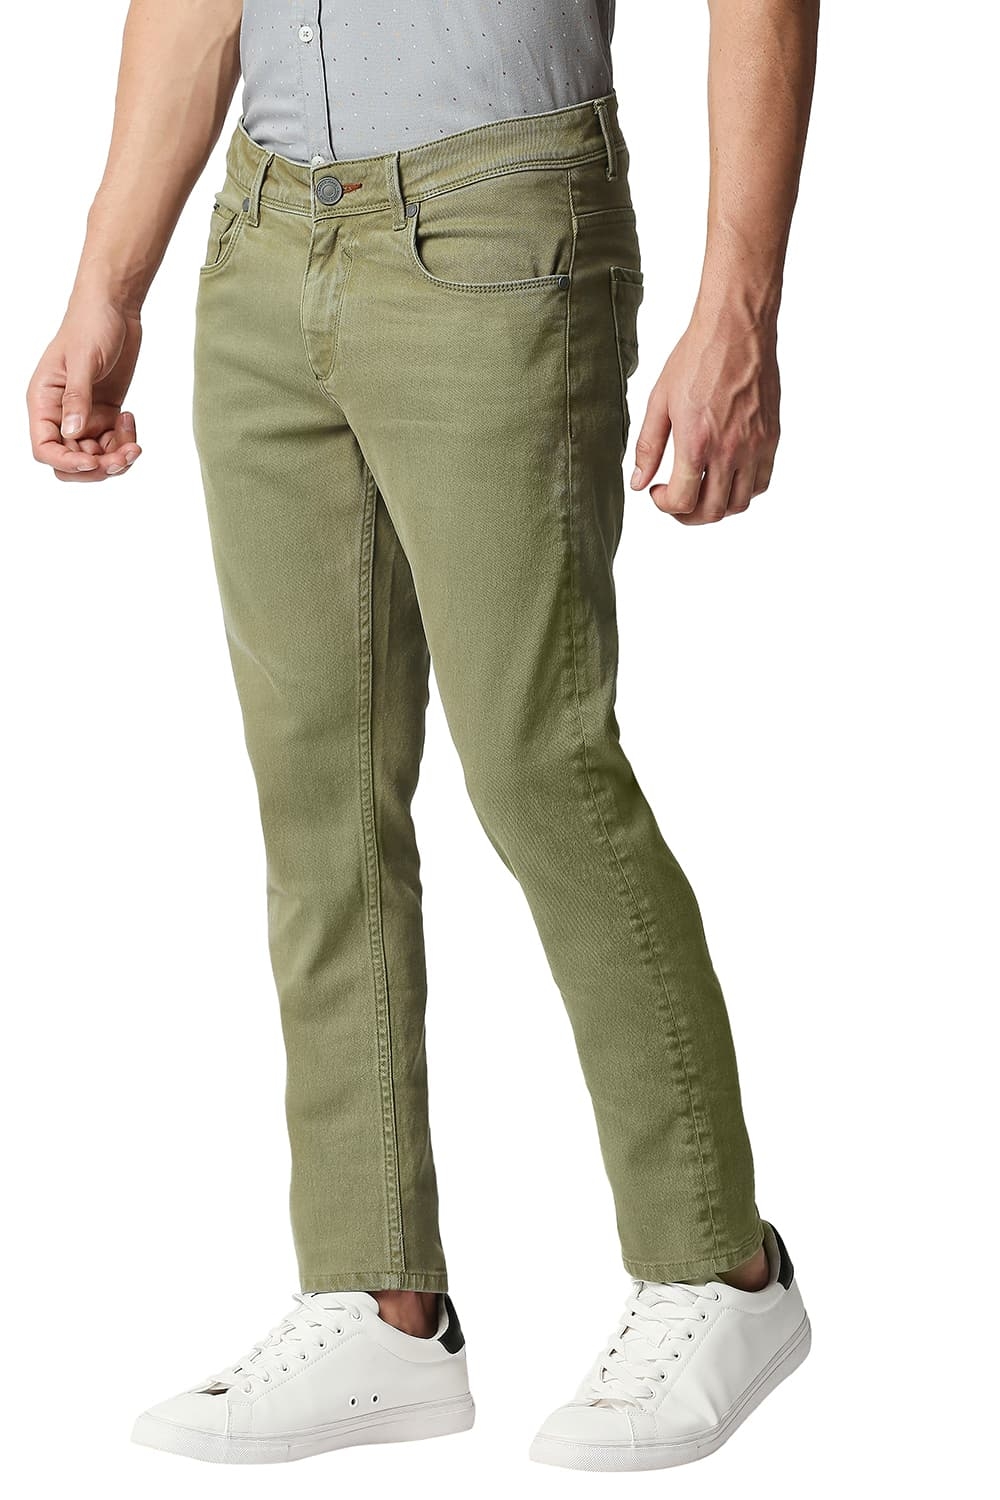 Basics | Men's Olive Cotton Blend Solid Jeans 3